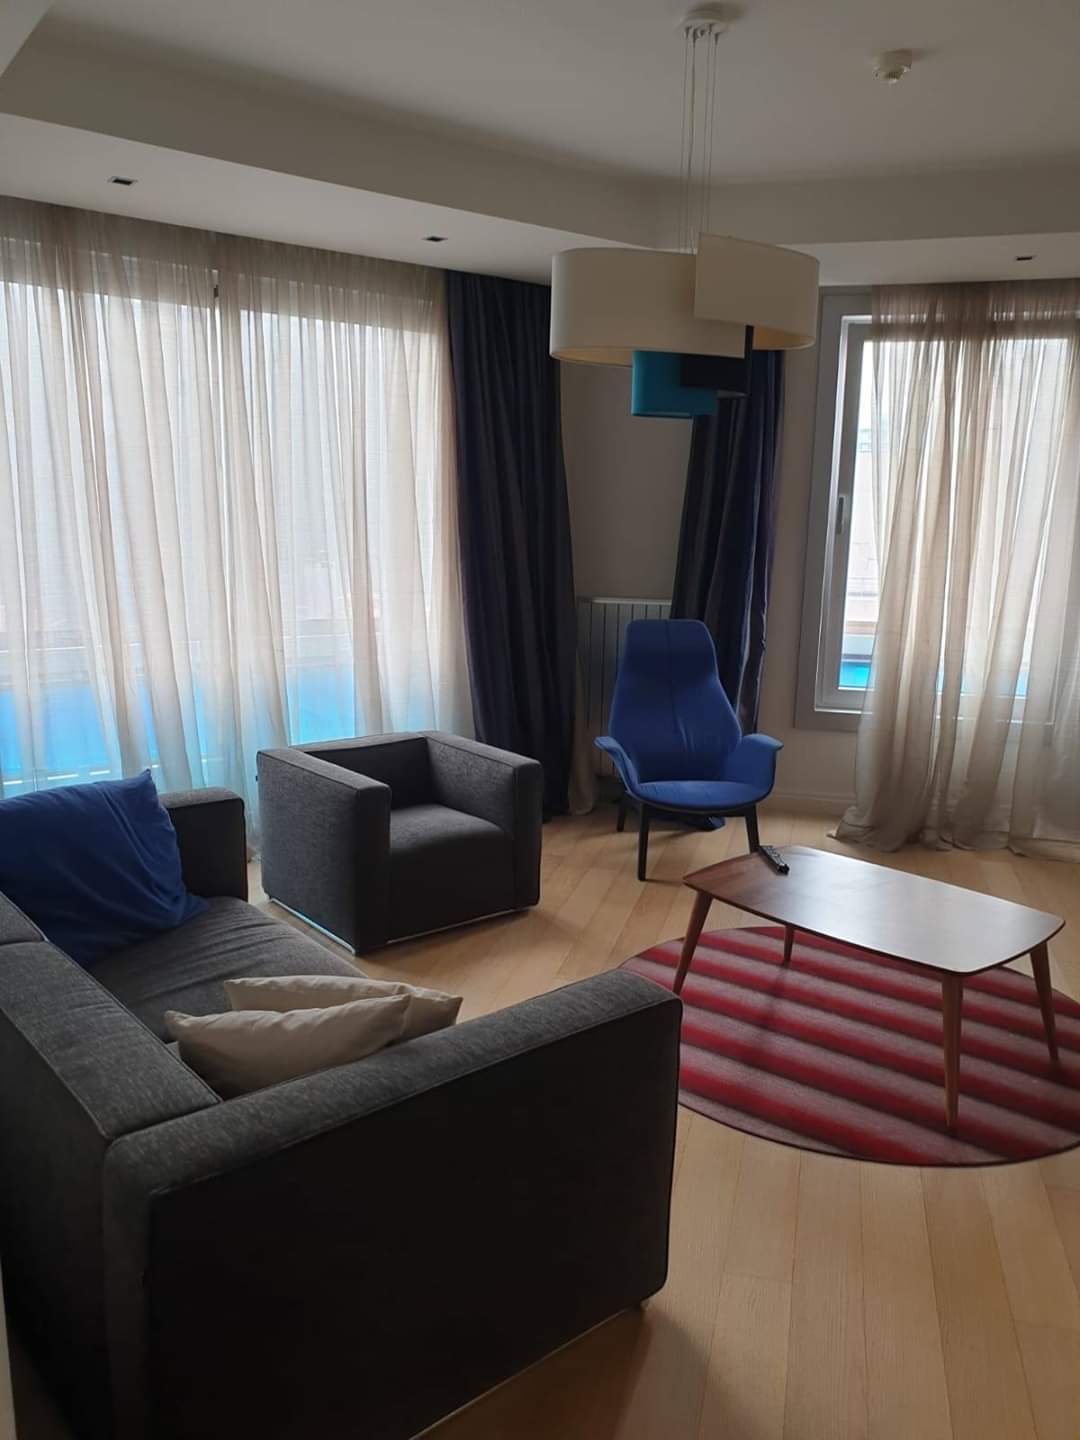 اعلان776  شقة فندقية غرفتين نوم وصالون مفروش لوكس للايجار السياحي في شيشلي اسطنبول